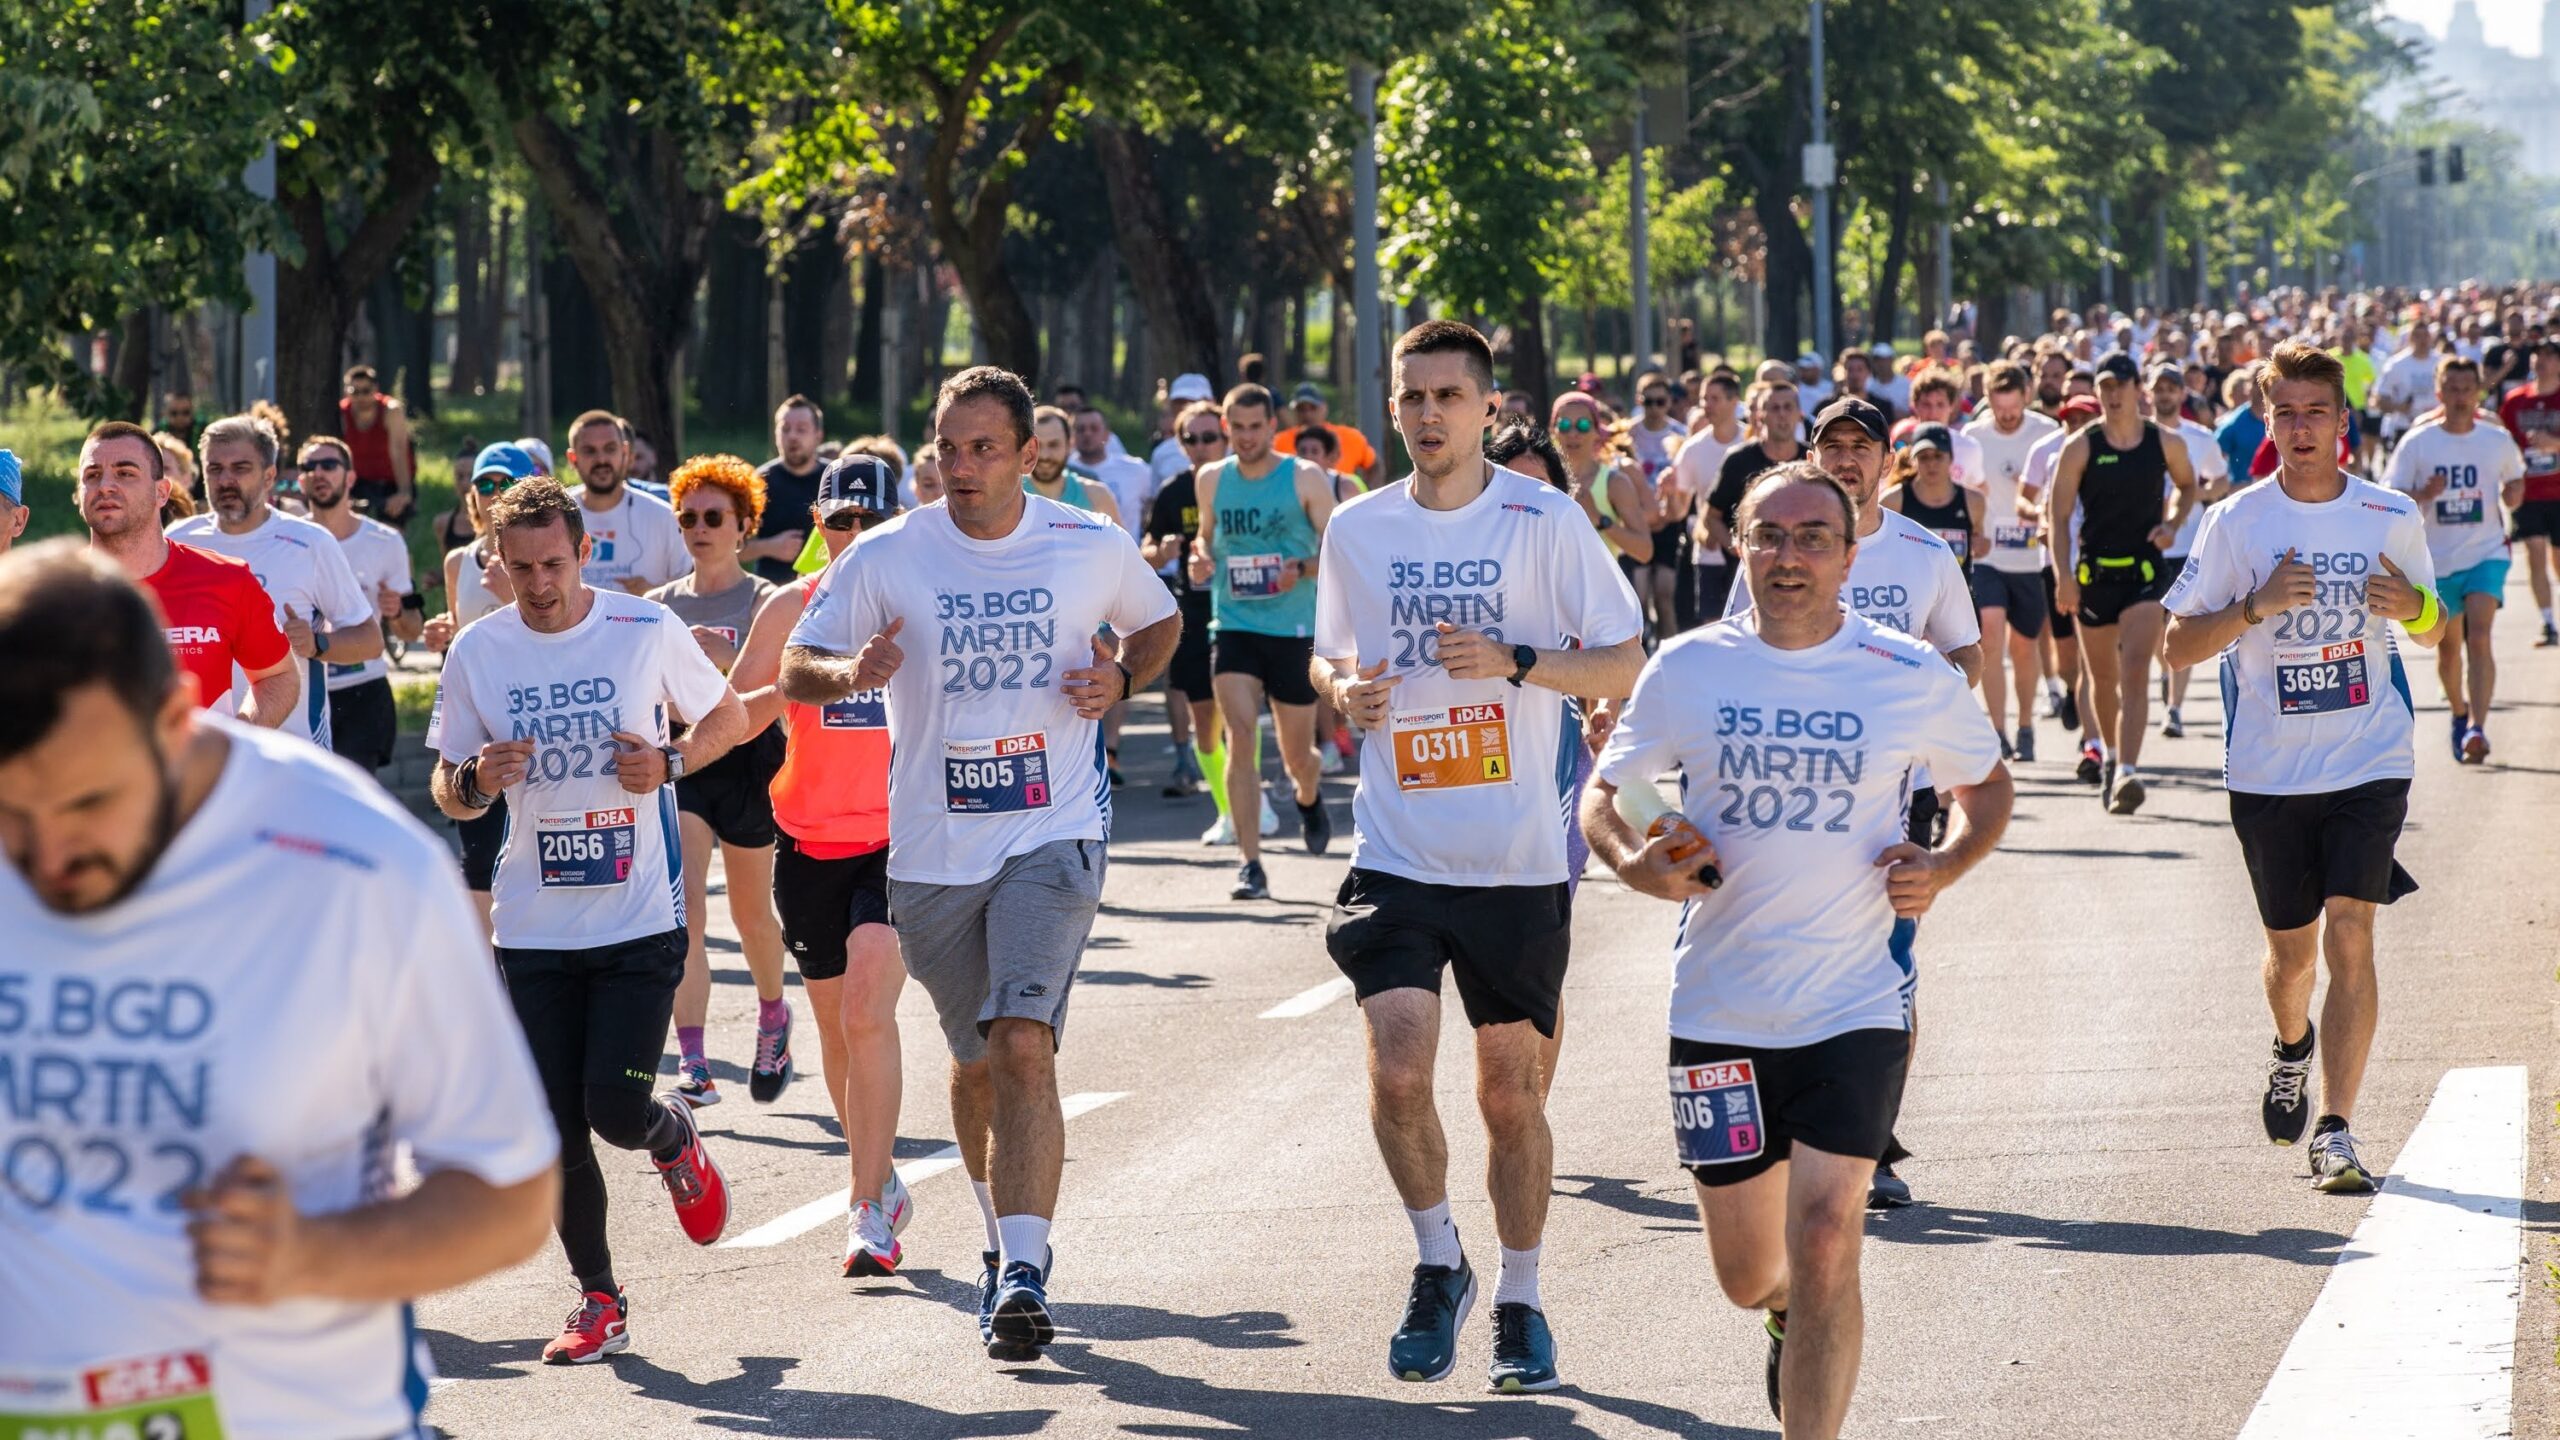 Otvaranje prijava za 36. Beogradski maraton u sredu 28. decembra 2022. godine